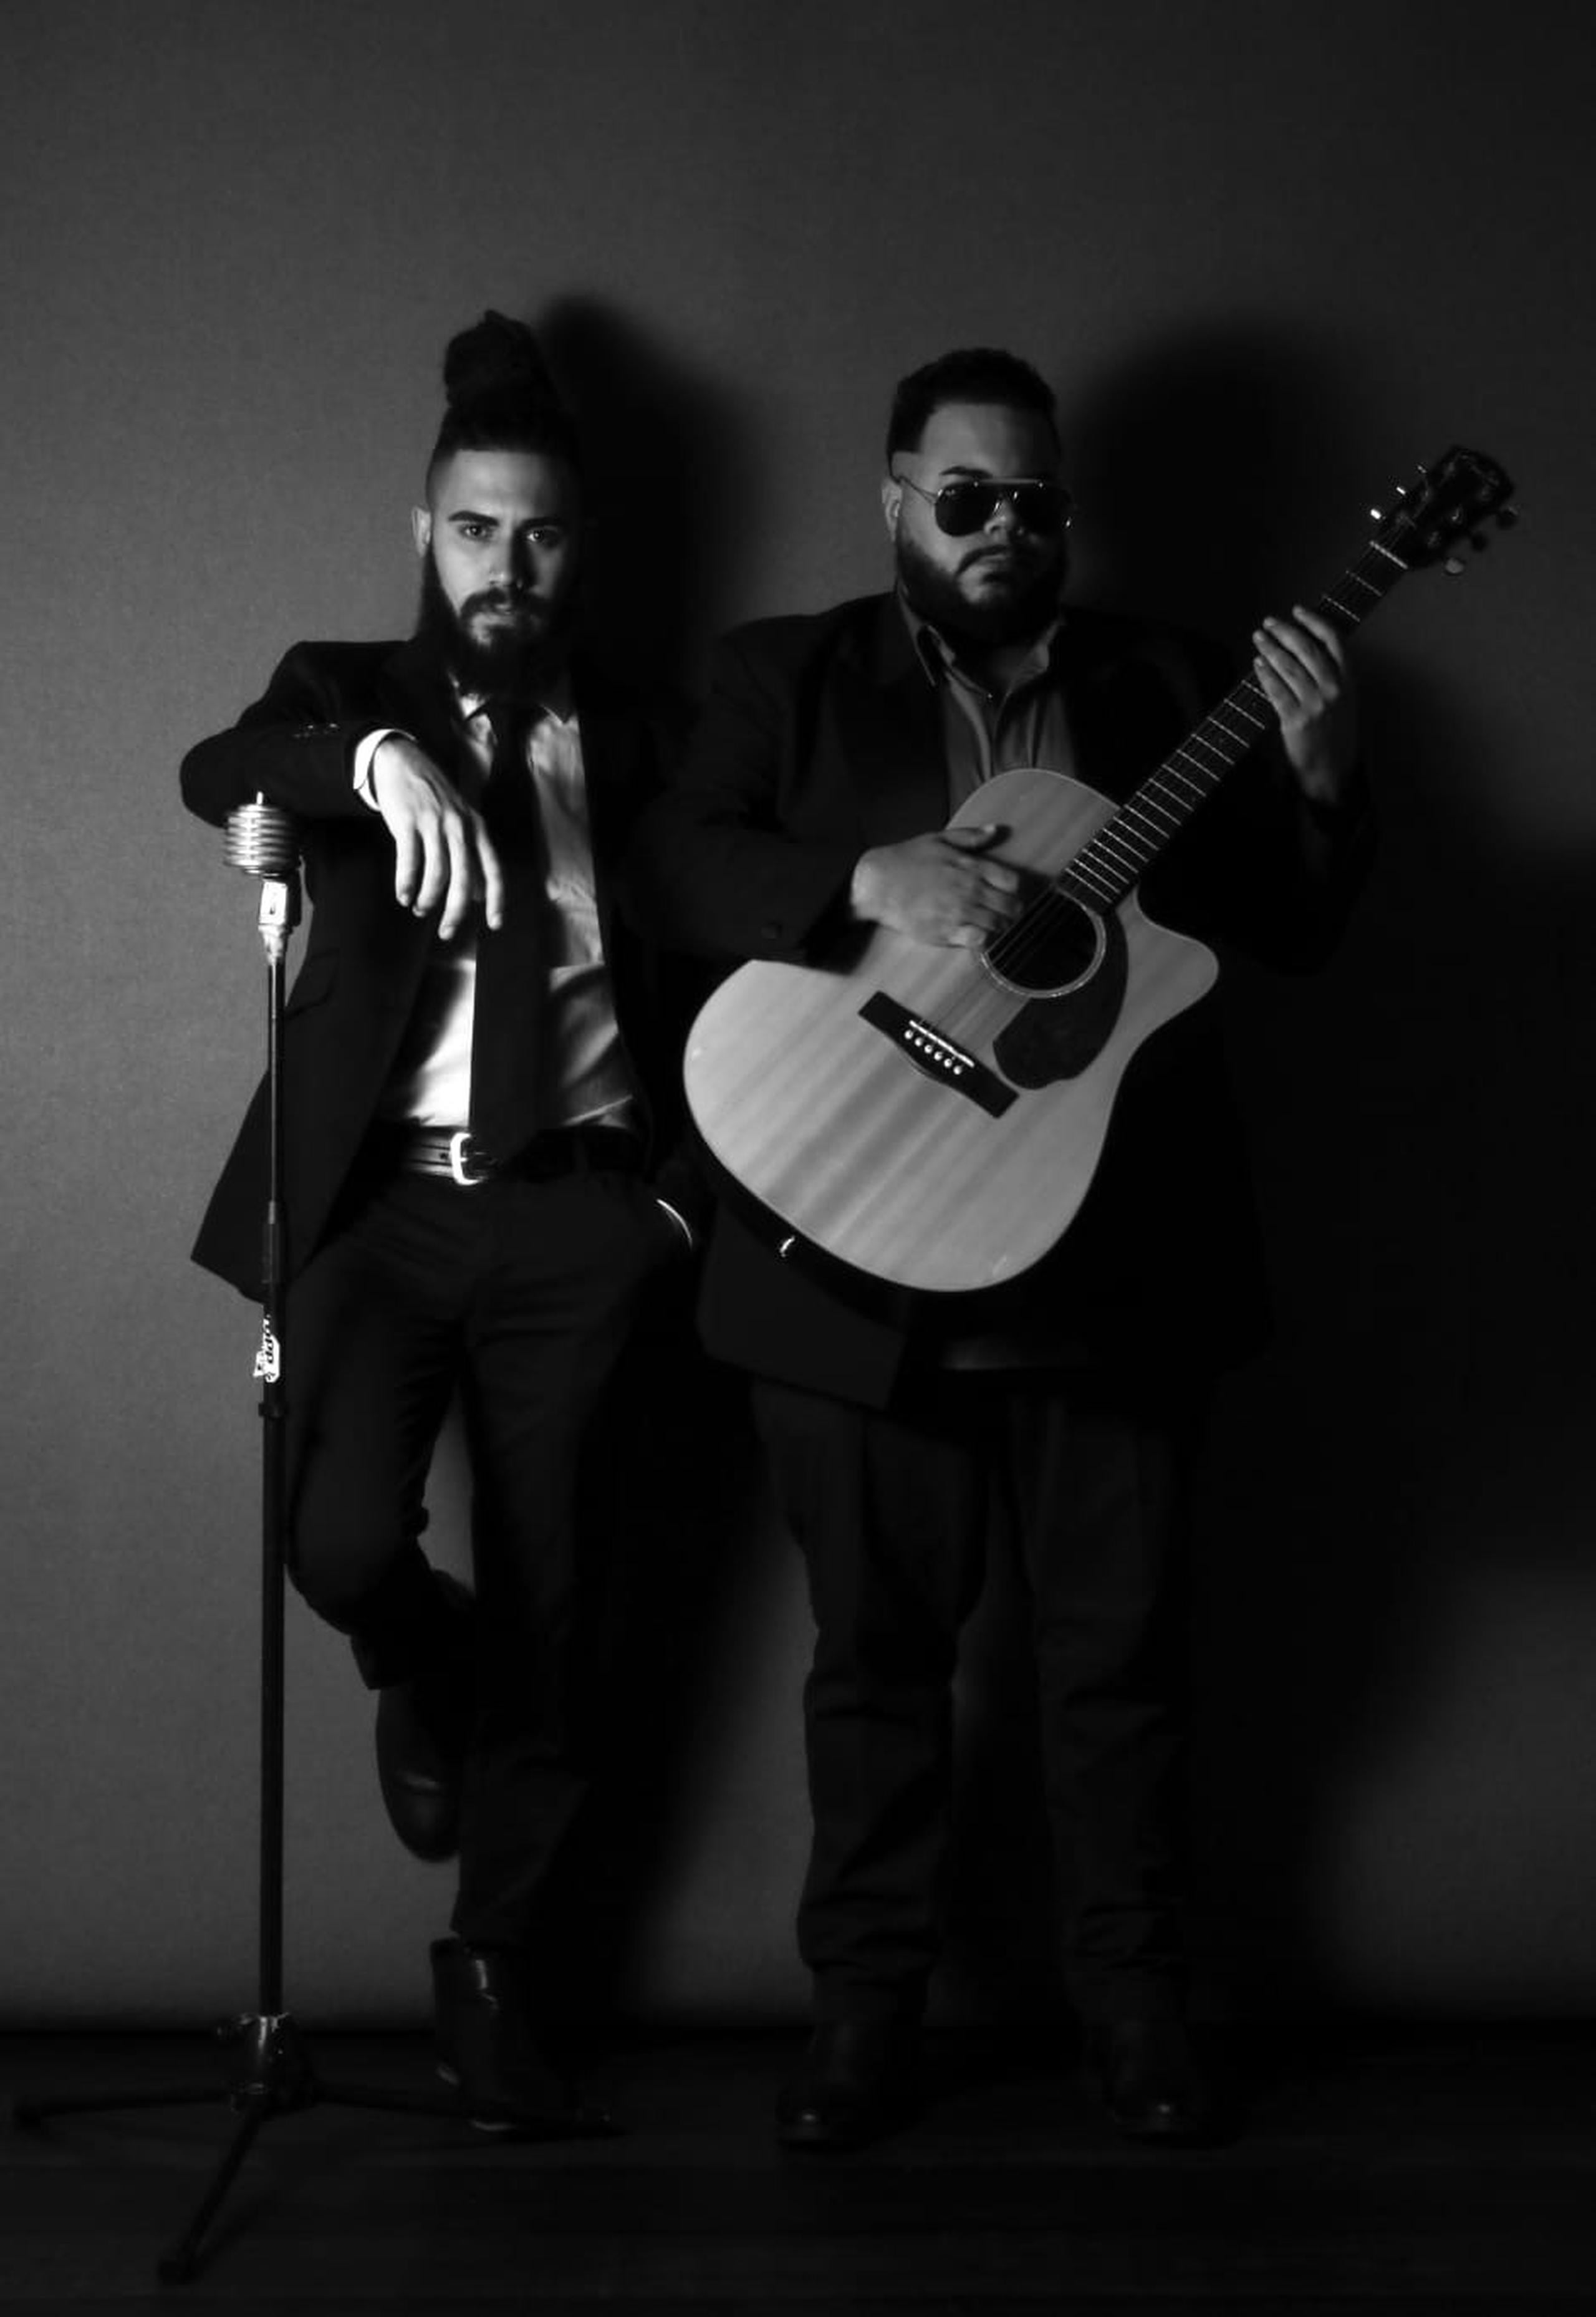 La banda "Remedio" surgió en 2018 como parte de la evolución musical de los hermanos quebradillanos.